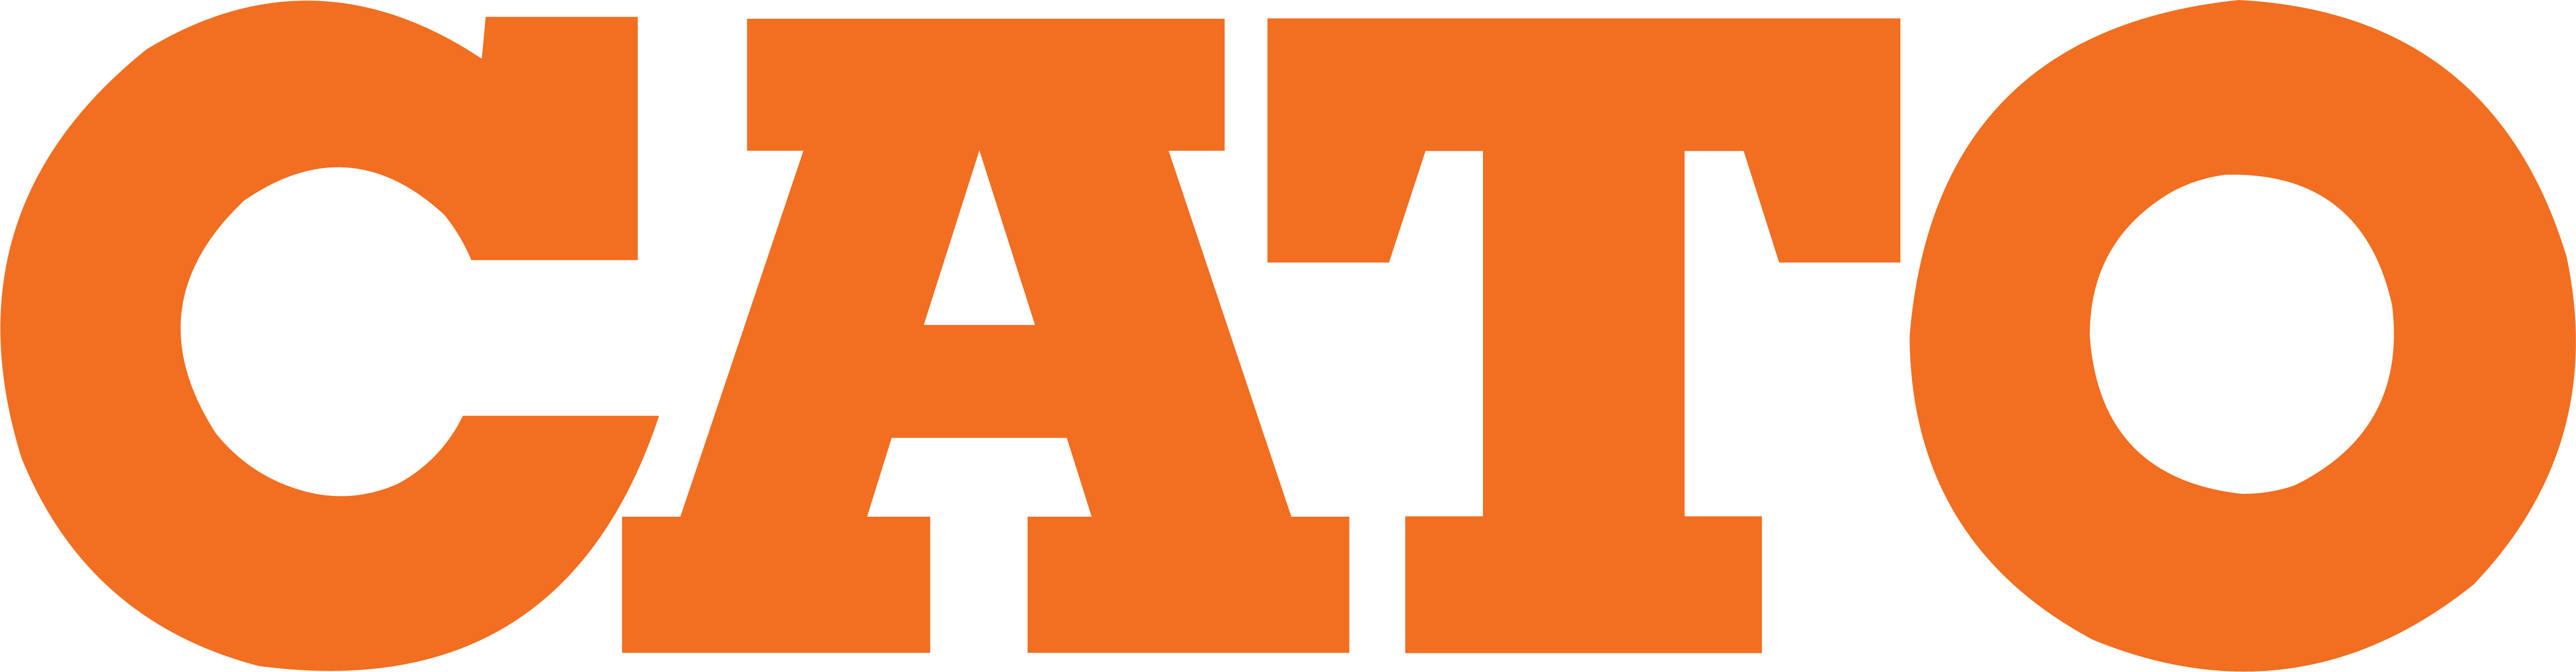 CATO-Logo-2020-01